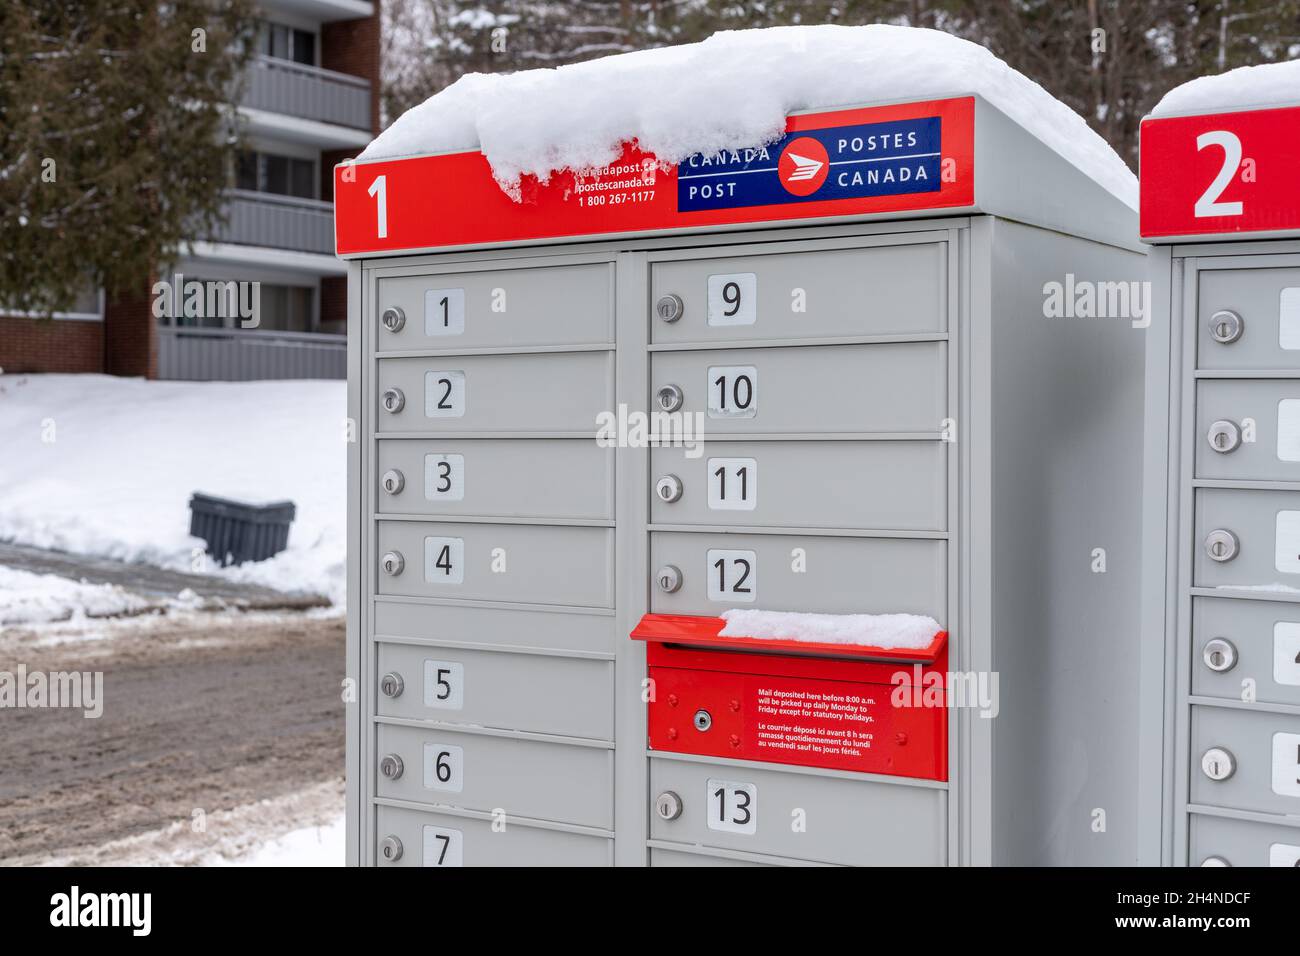 Kanada Postfächer mit rotem Schild in Englisch und Französisch in der Nähe von Haus im Winter Stockfoto